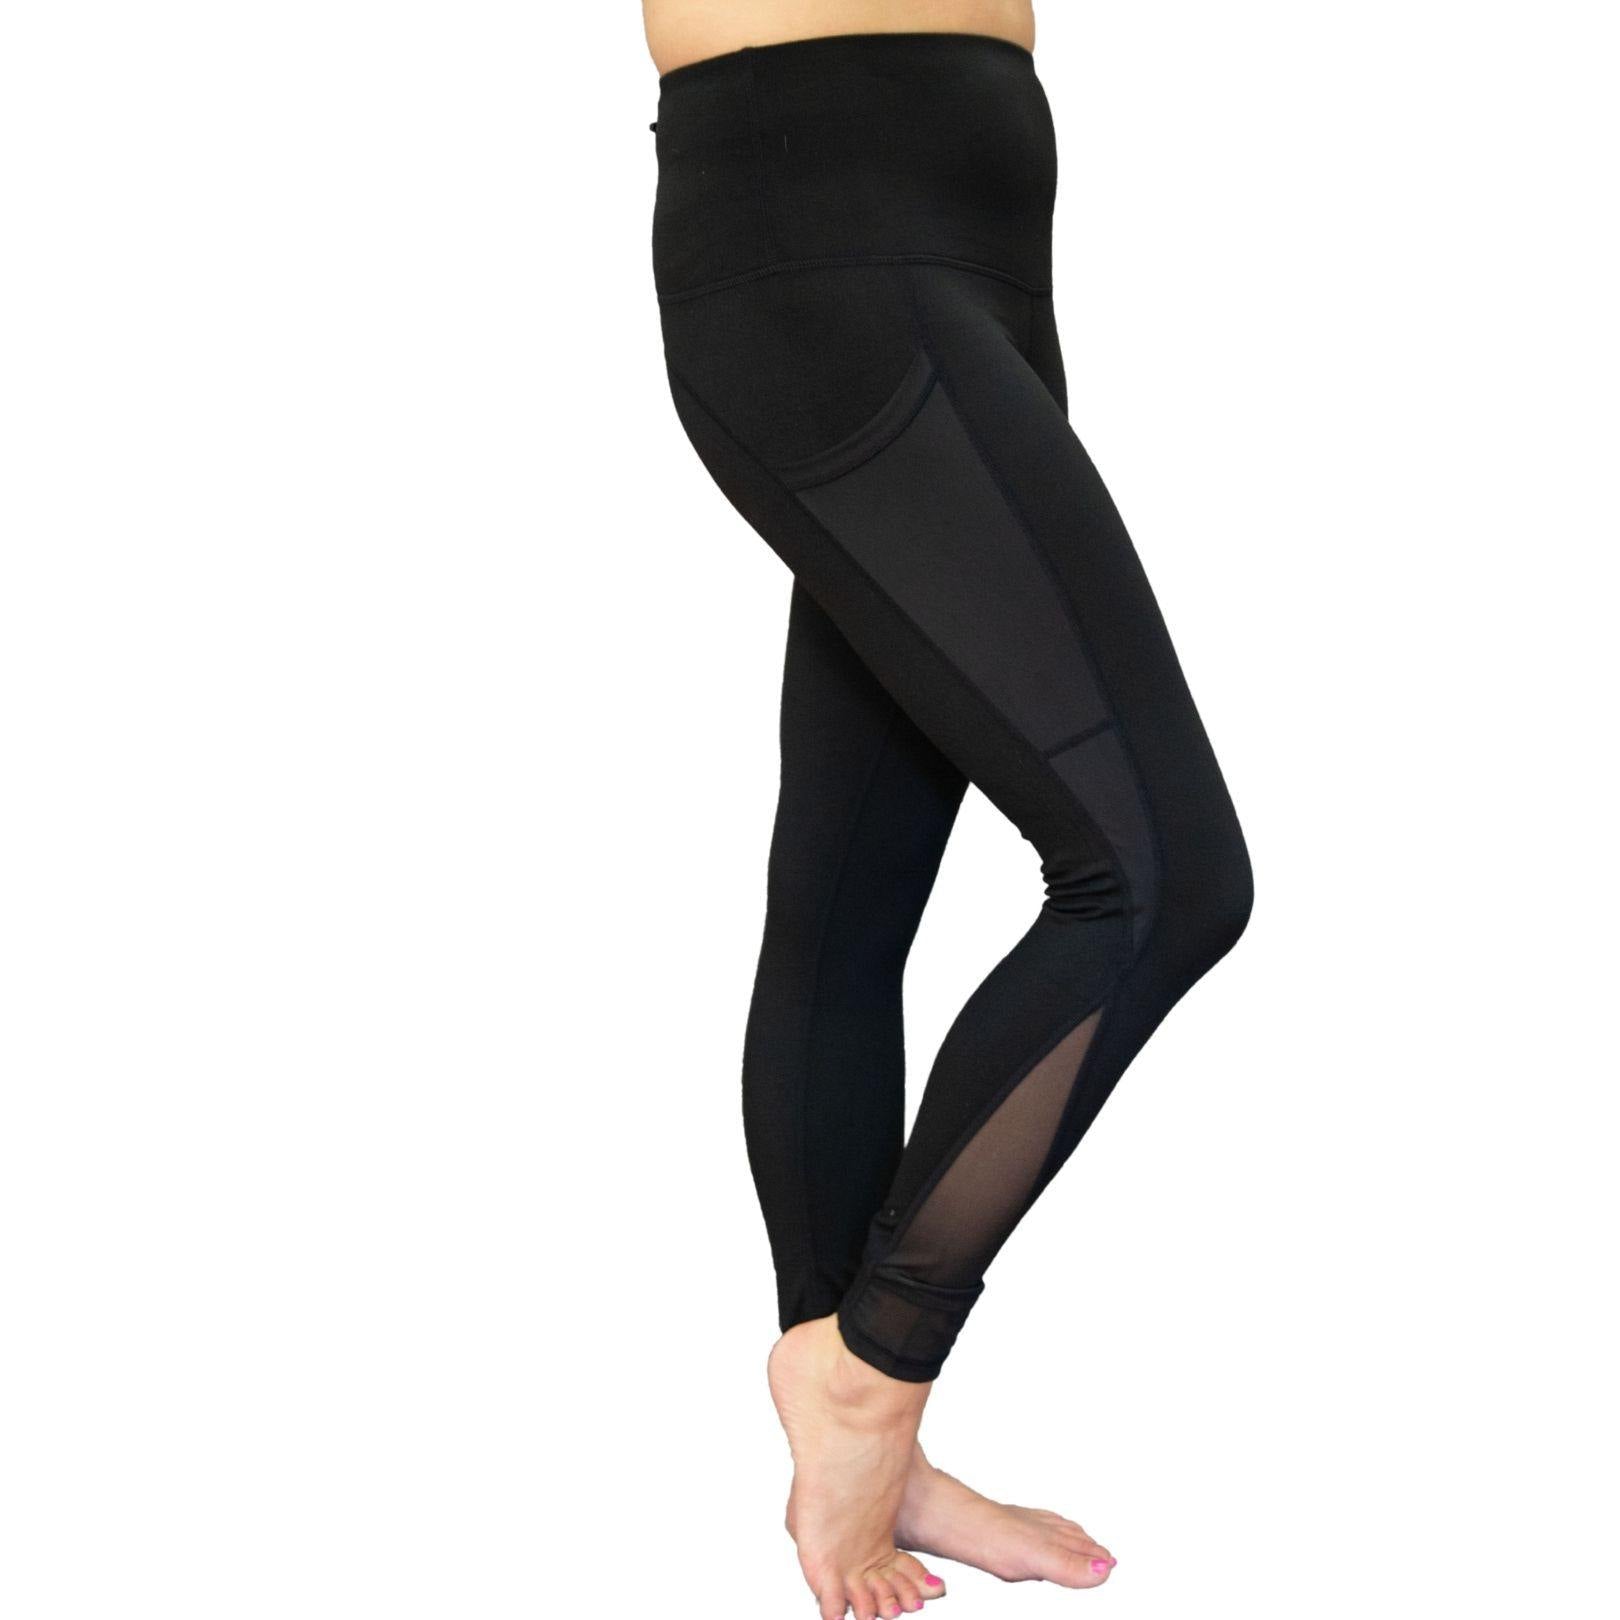 http://daliajade.com/cdn/shop/products/mono-b-black-yoga-leggings.jpg?v=1629086252